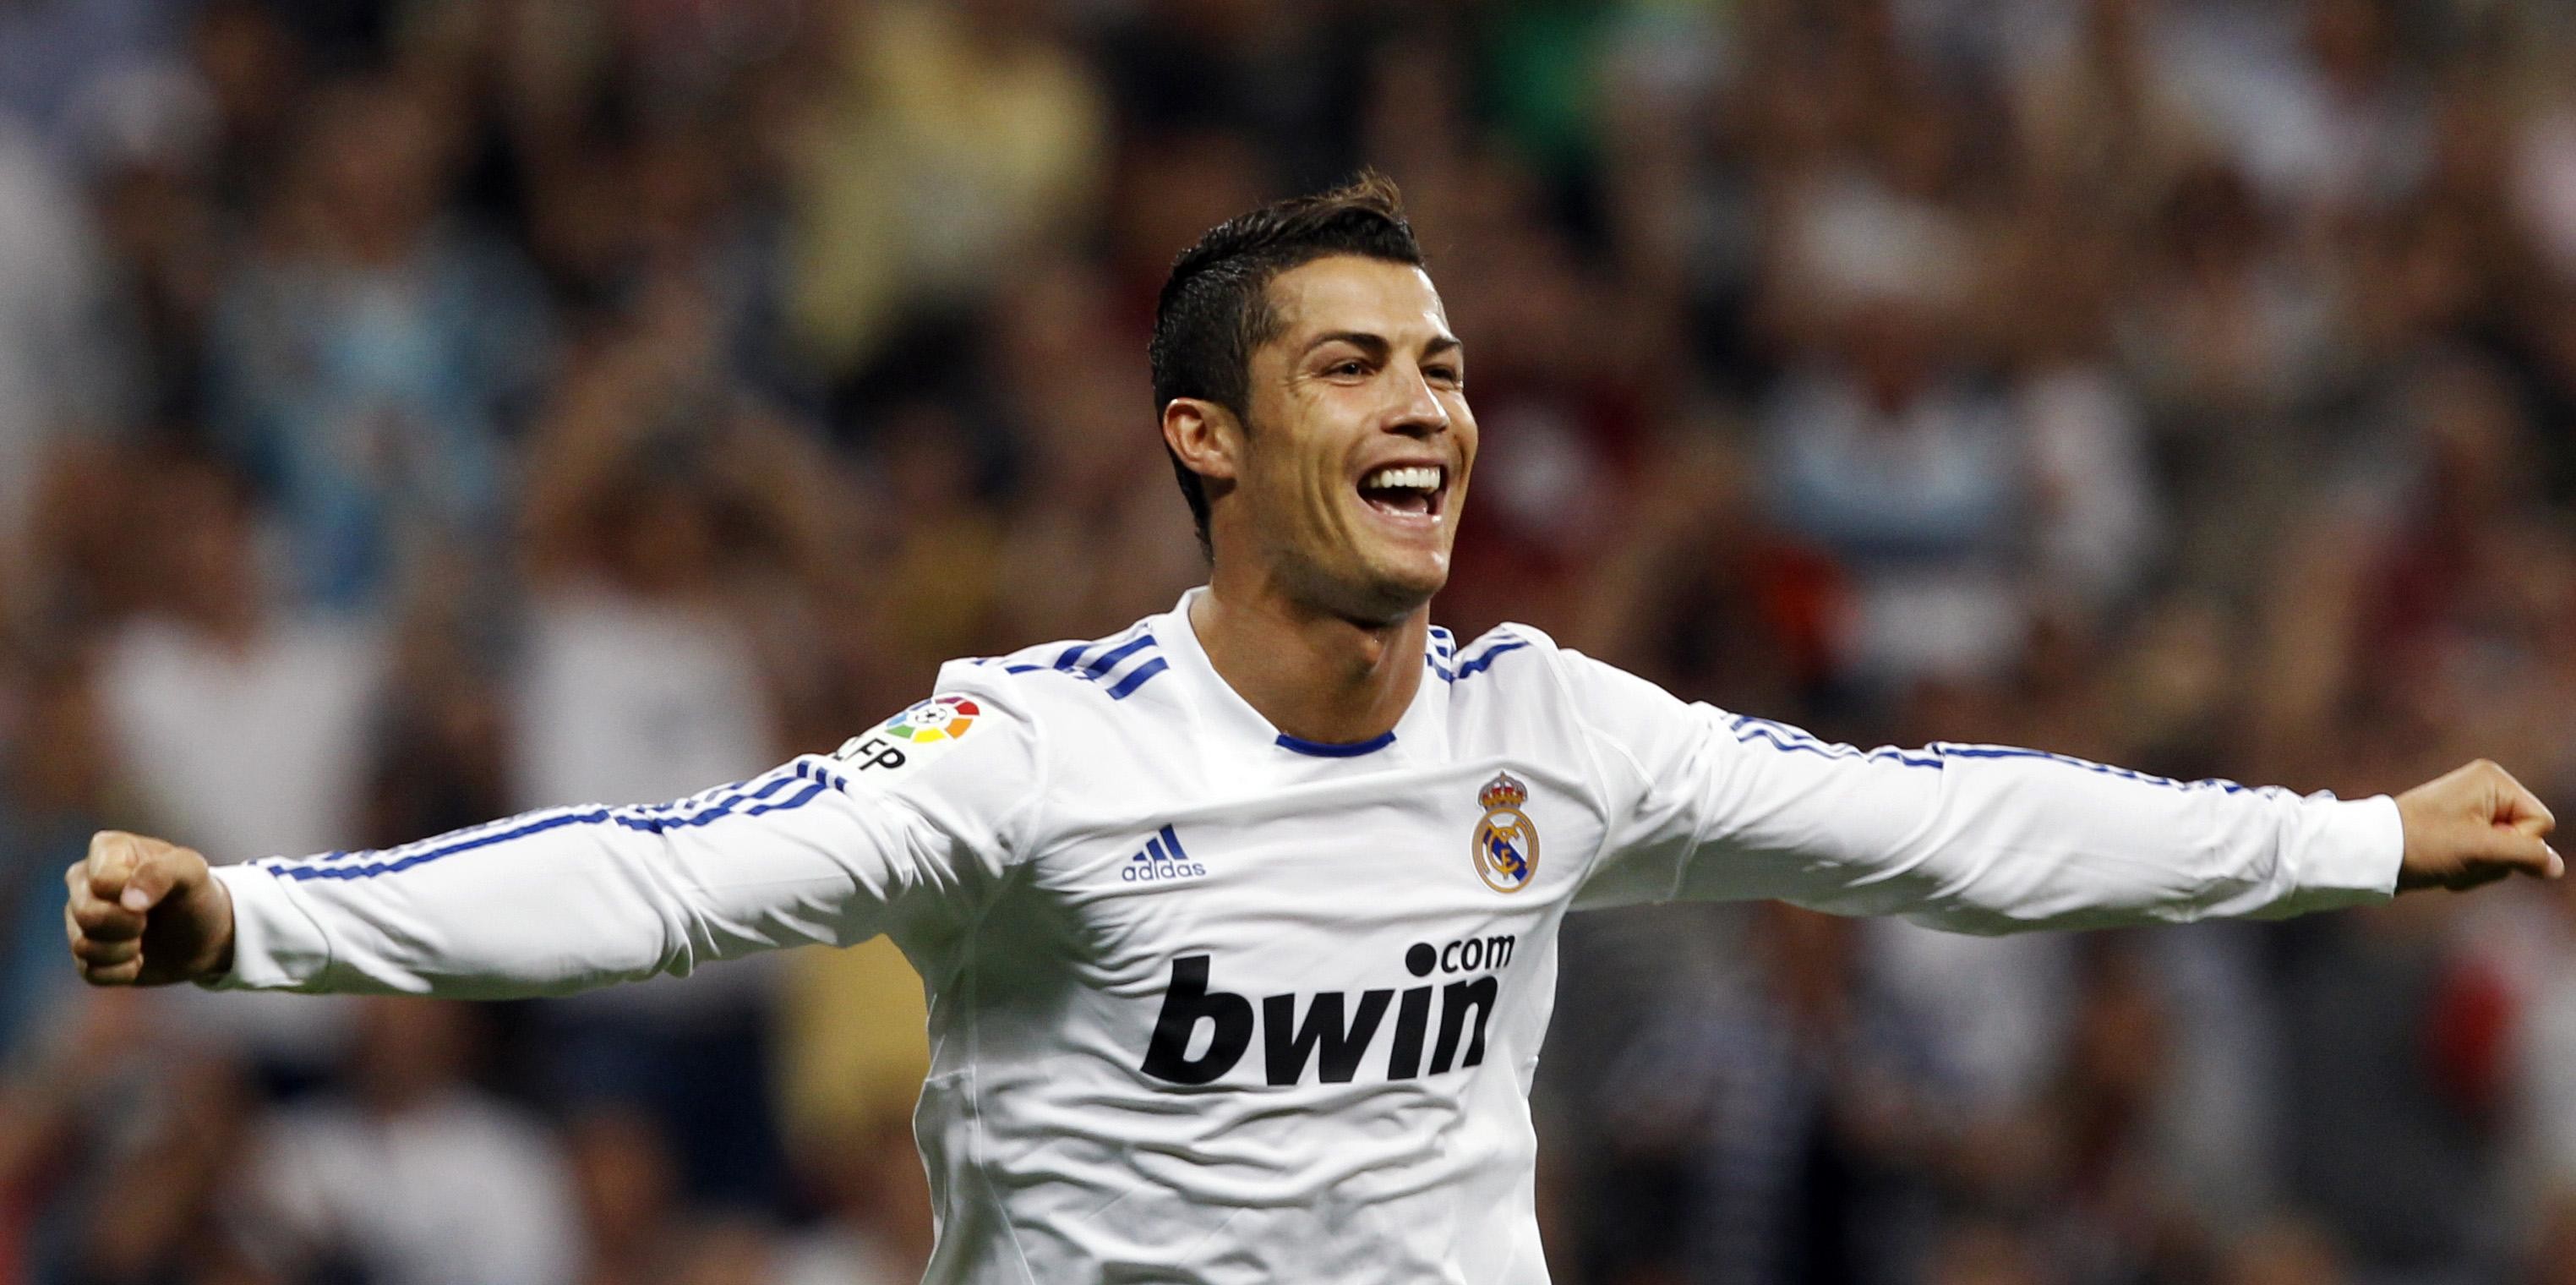 … Cristiano Ronaldo hot Wallpaper …